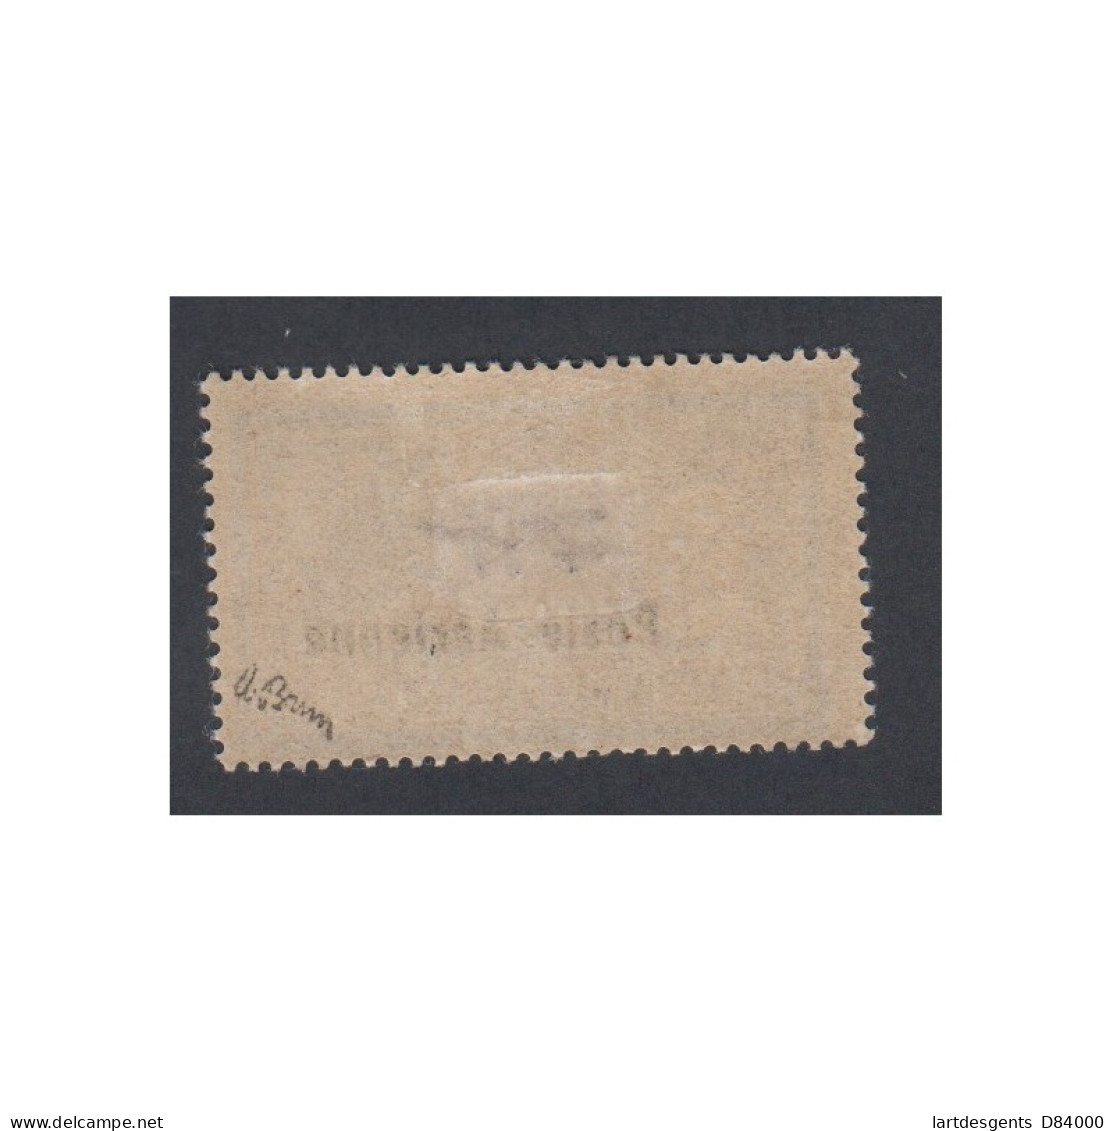 Timbre Poste Aérienne - Timbre N°2 - 1927 - Neuf* Avec Charnière Signé Brun - Cote 250 Euros- Lartdesgents - 1927-1959 Ungebraucht